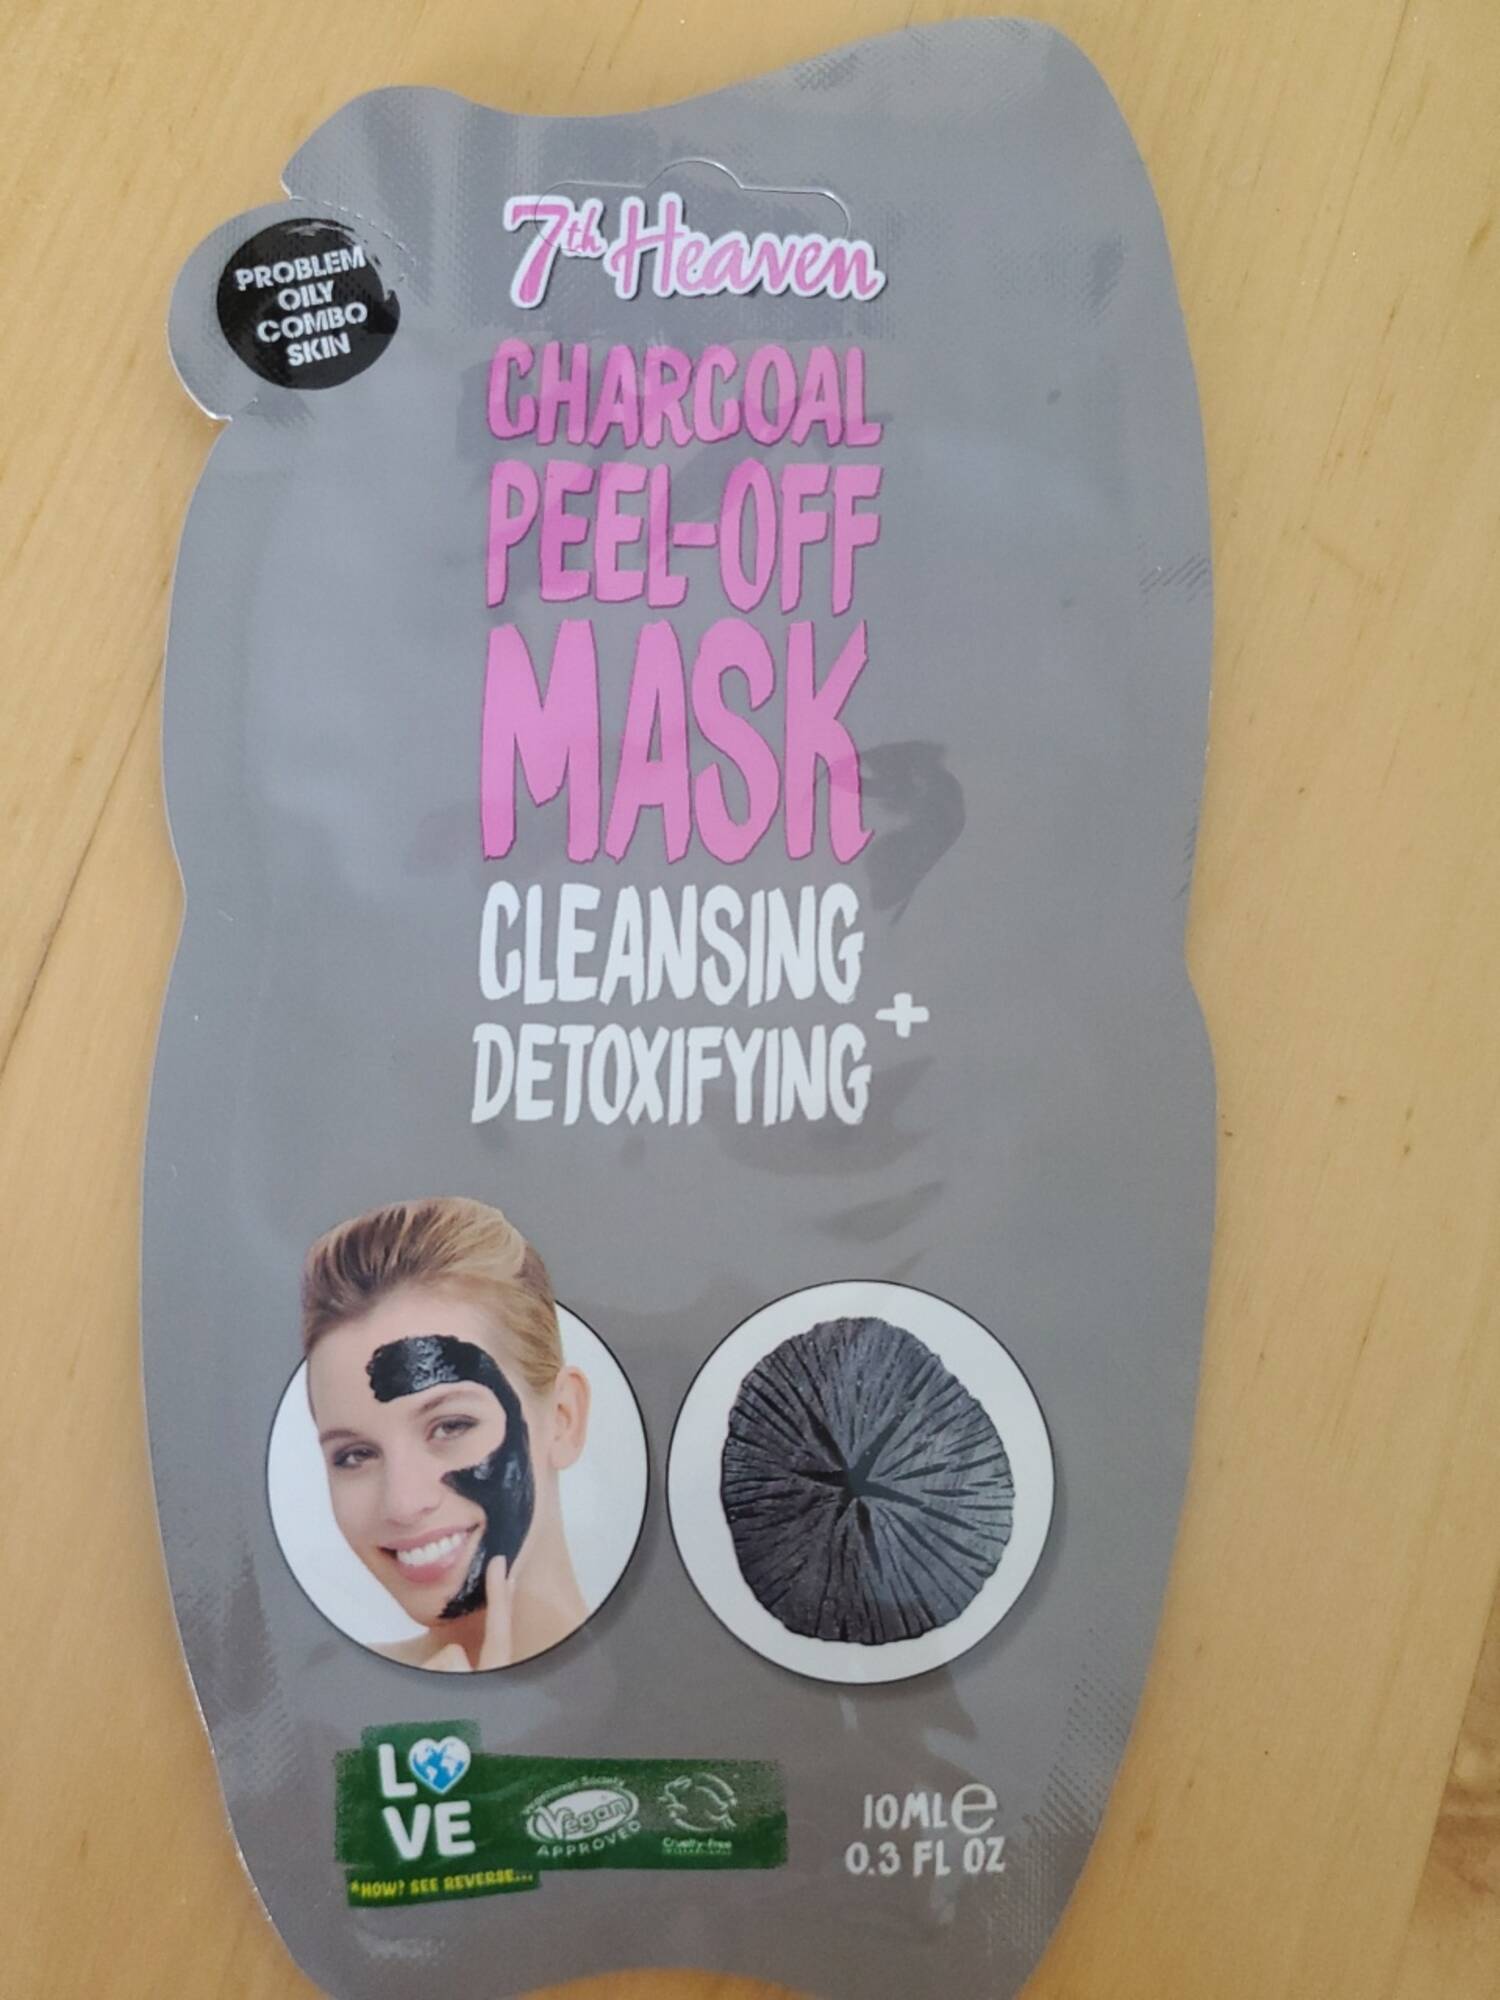 7TH HEAVEN - Charcoal peel-off mask